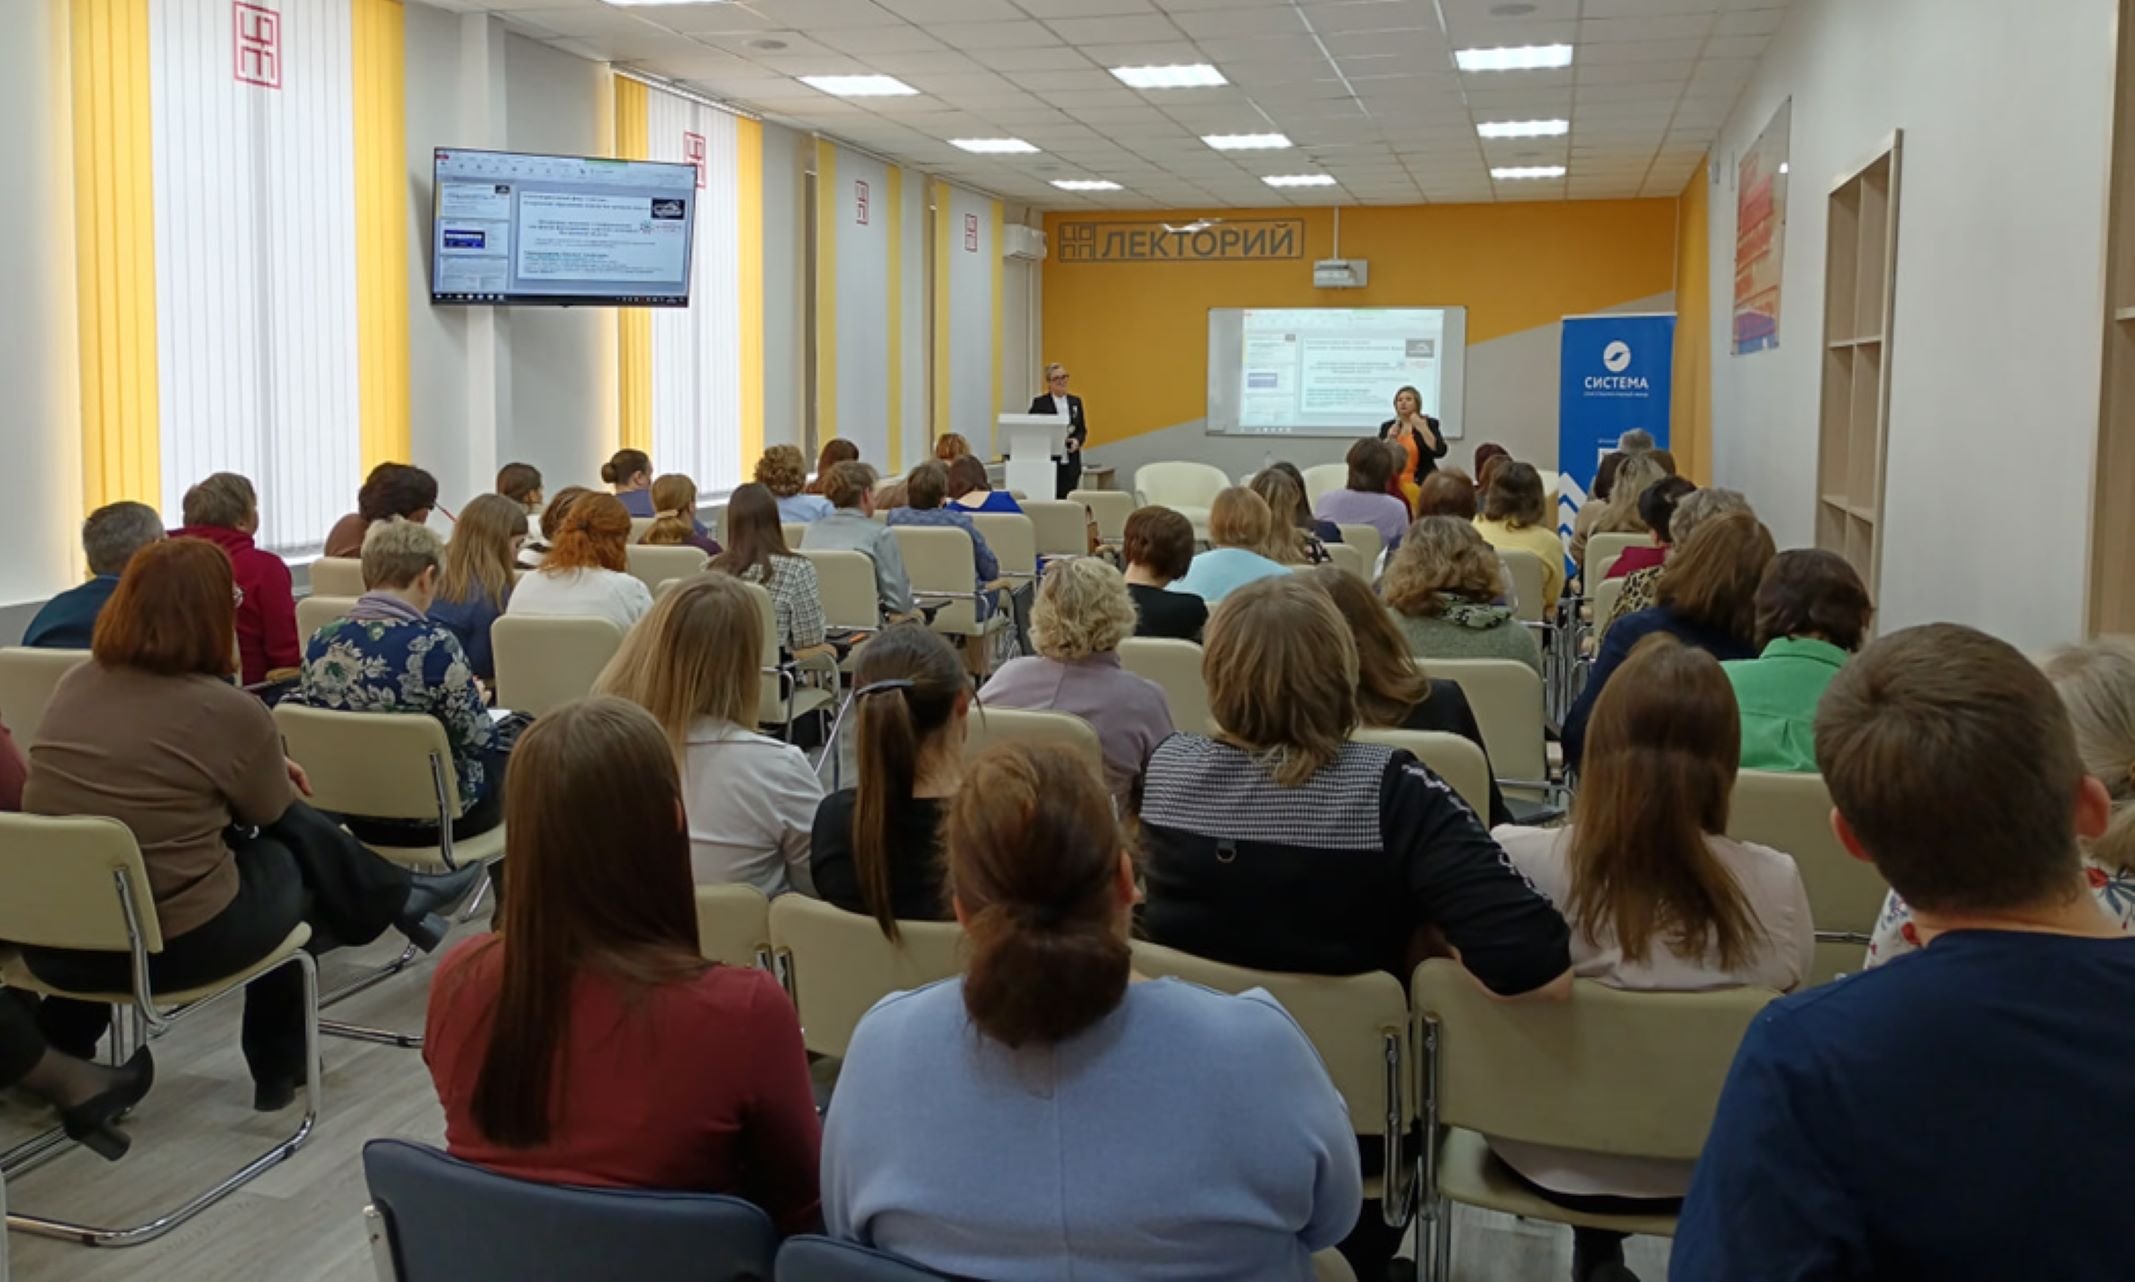  Благотворительный фонд «Система» и Департамент образования и науки Костромской области провели семинар о профориентации и воспитании молодежи